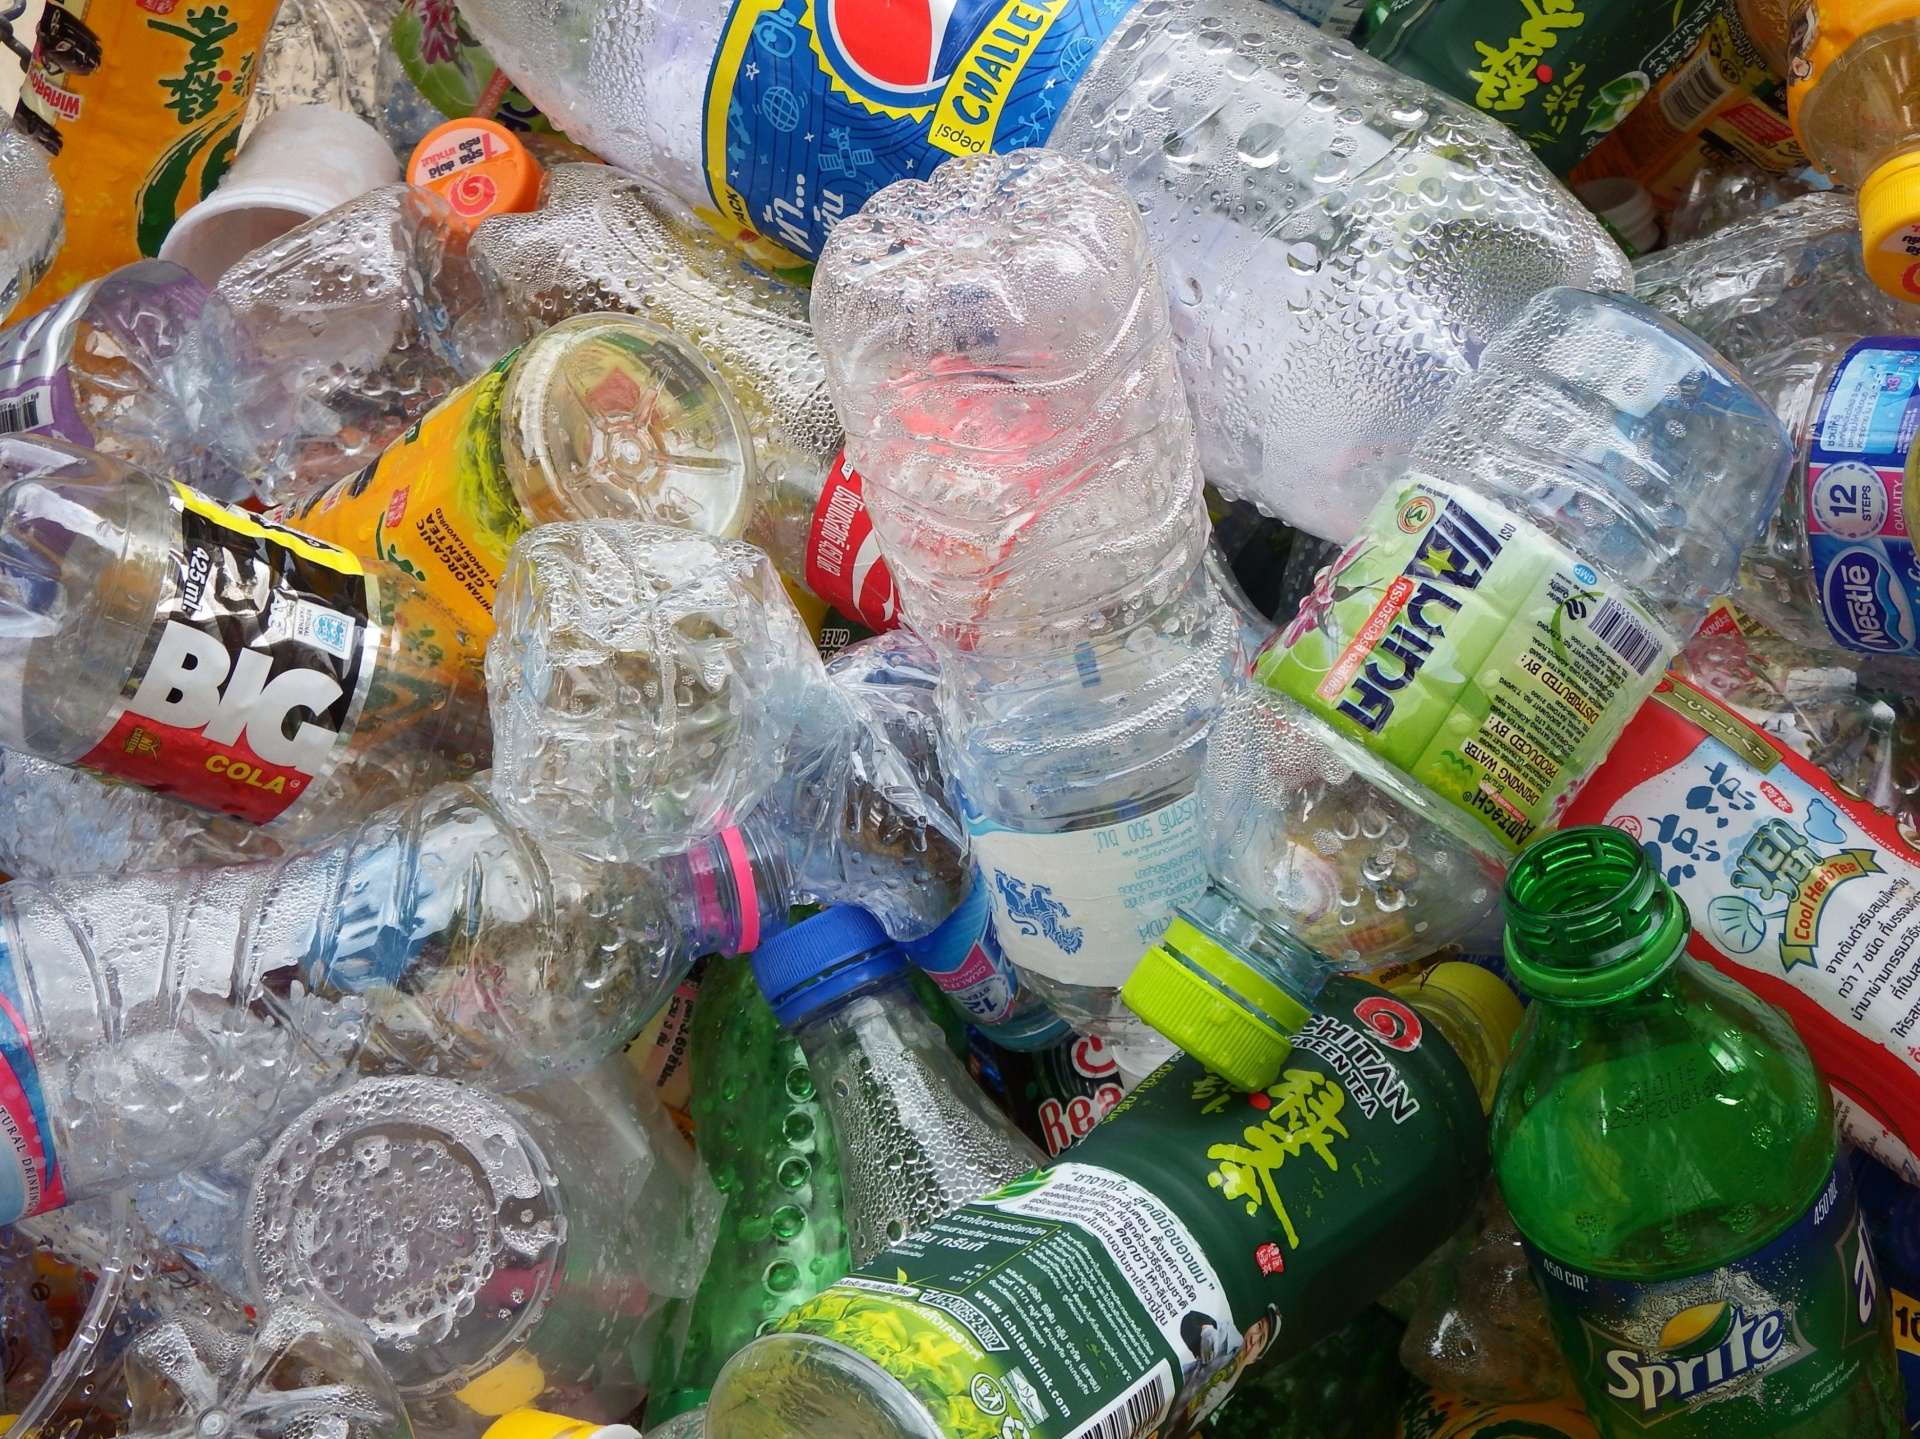 La imagen muestra botellas de plástico amontonadas, de diferentes formas y tamaños